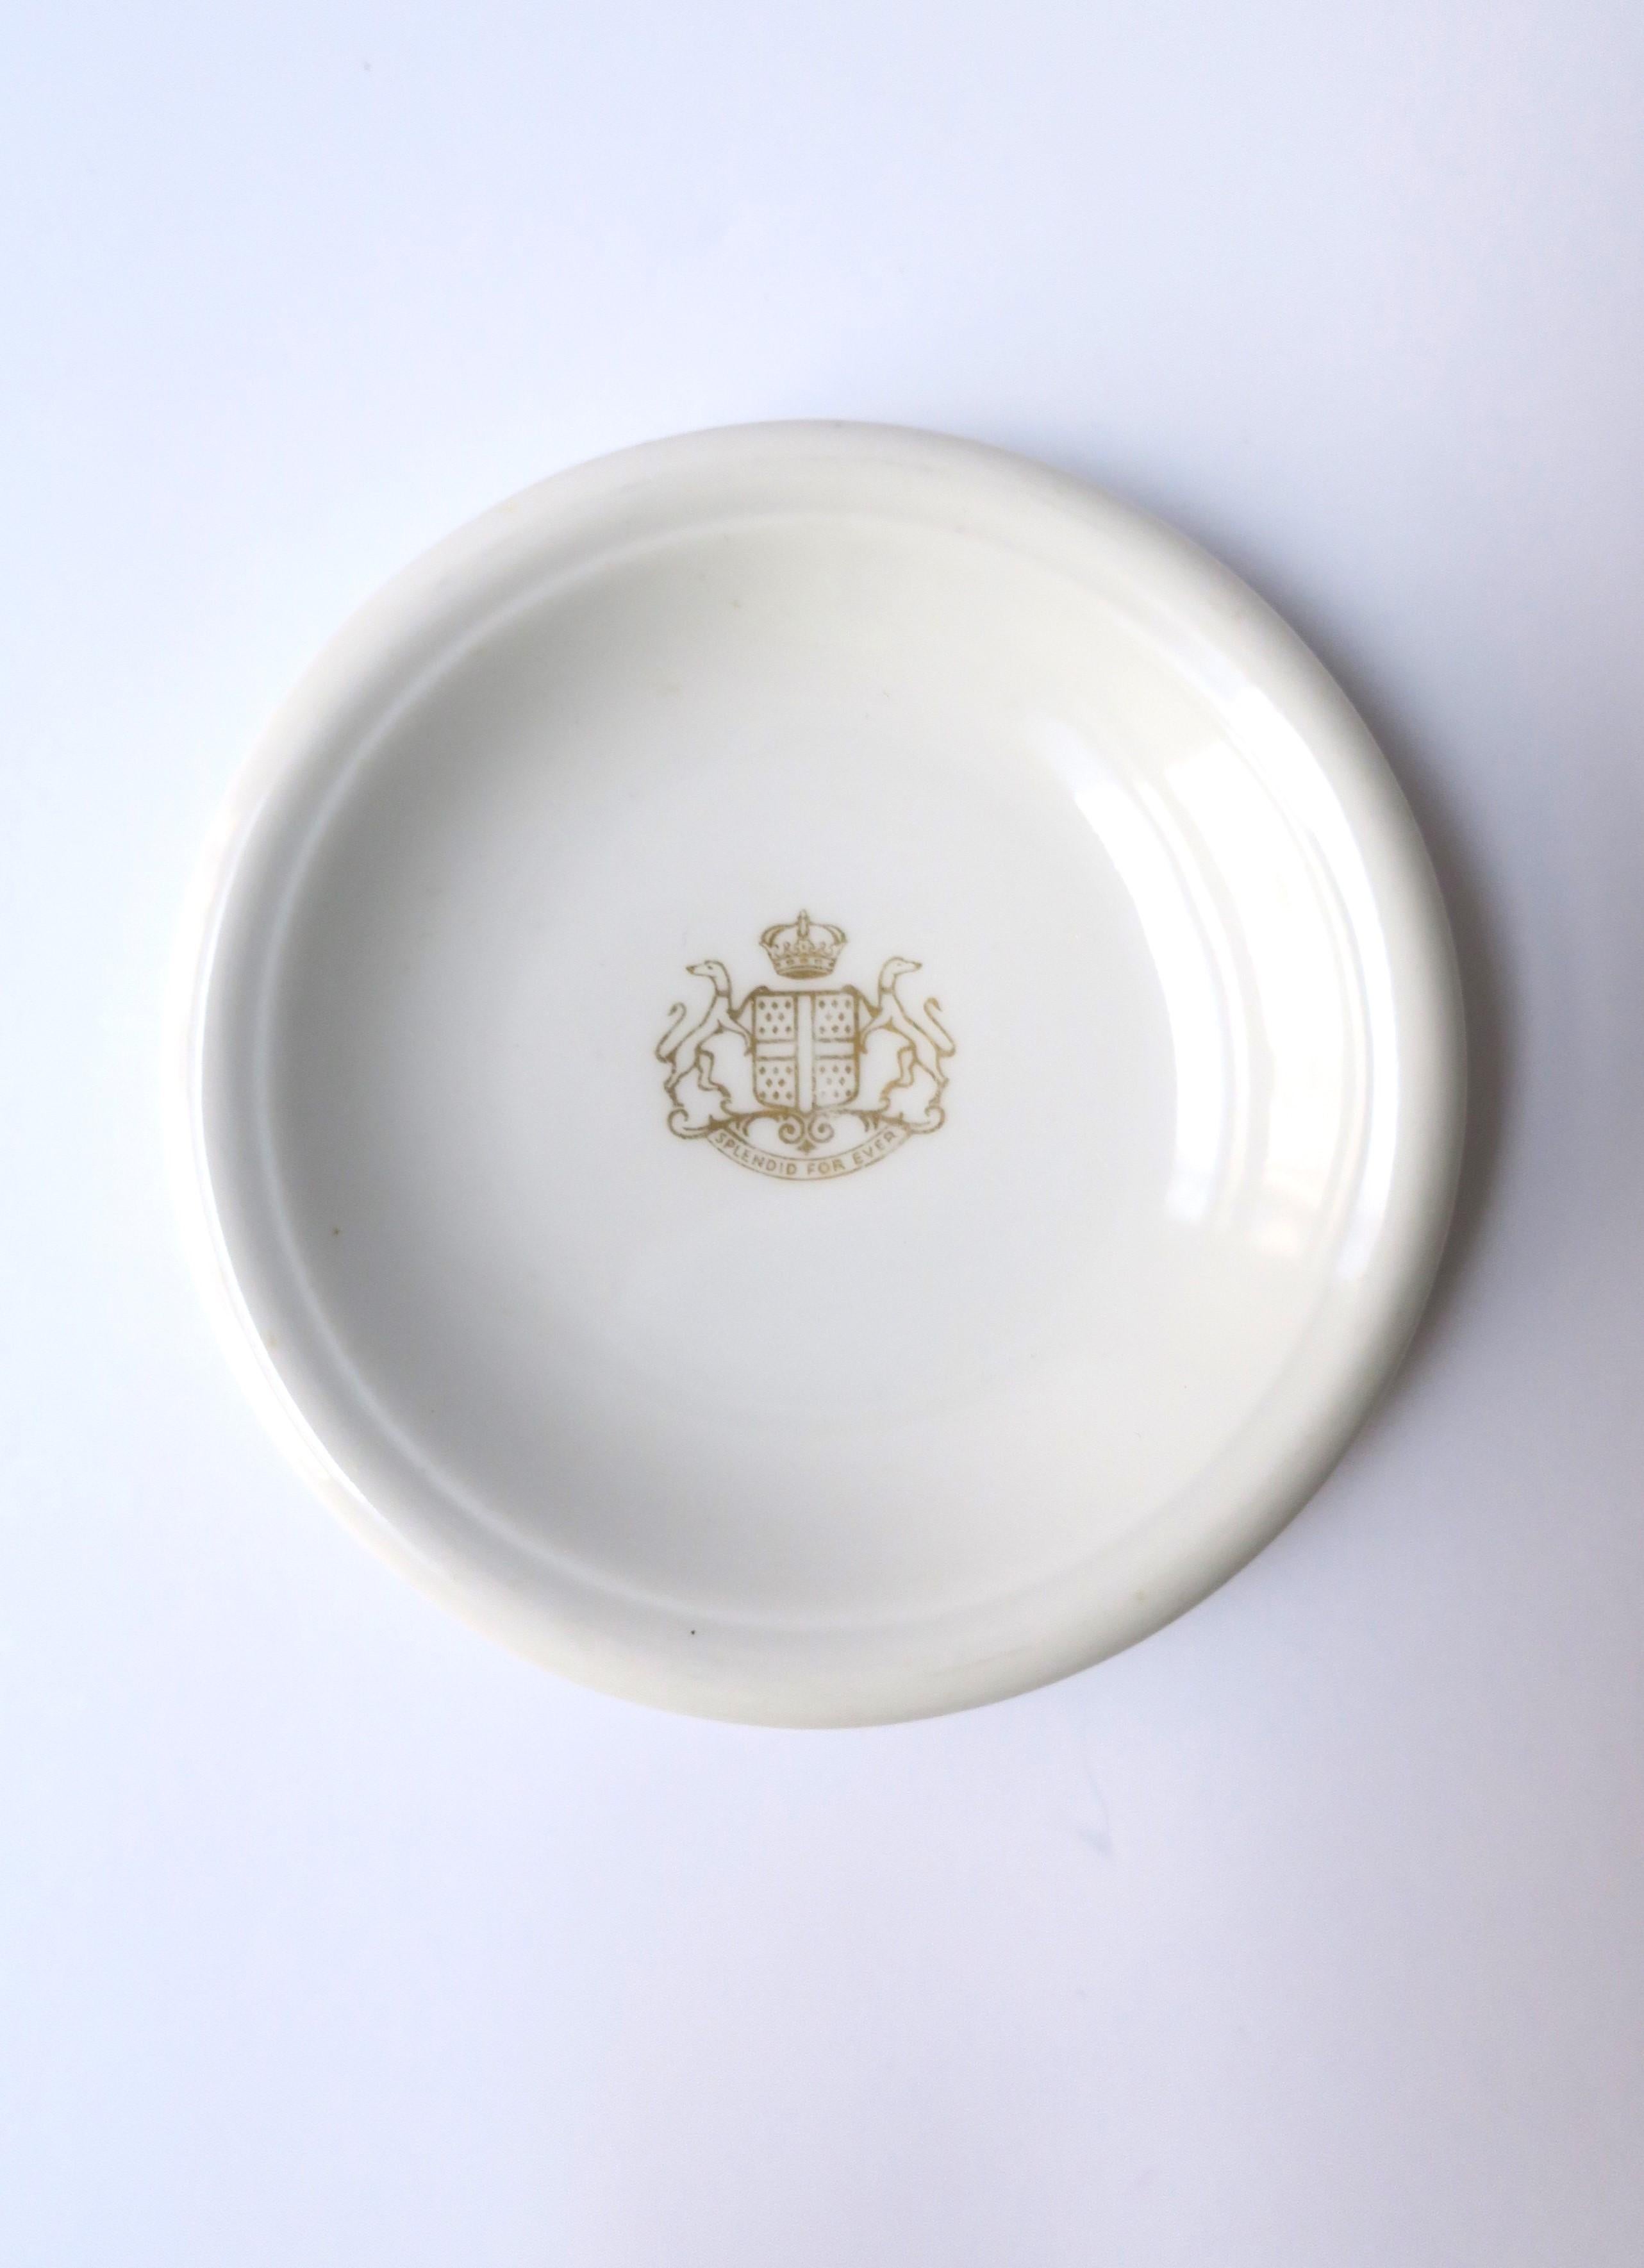 Rare petit plat en porcelaine, de fabrication allemande (Schonwald), conçu par le designer français Jean Luce, vers le début du XXe siècle, Allemagne et France. Ce petit plat rond pourrait avoir été une pièce de vaisselle pour contenir une plaquette